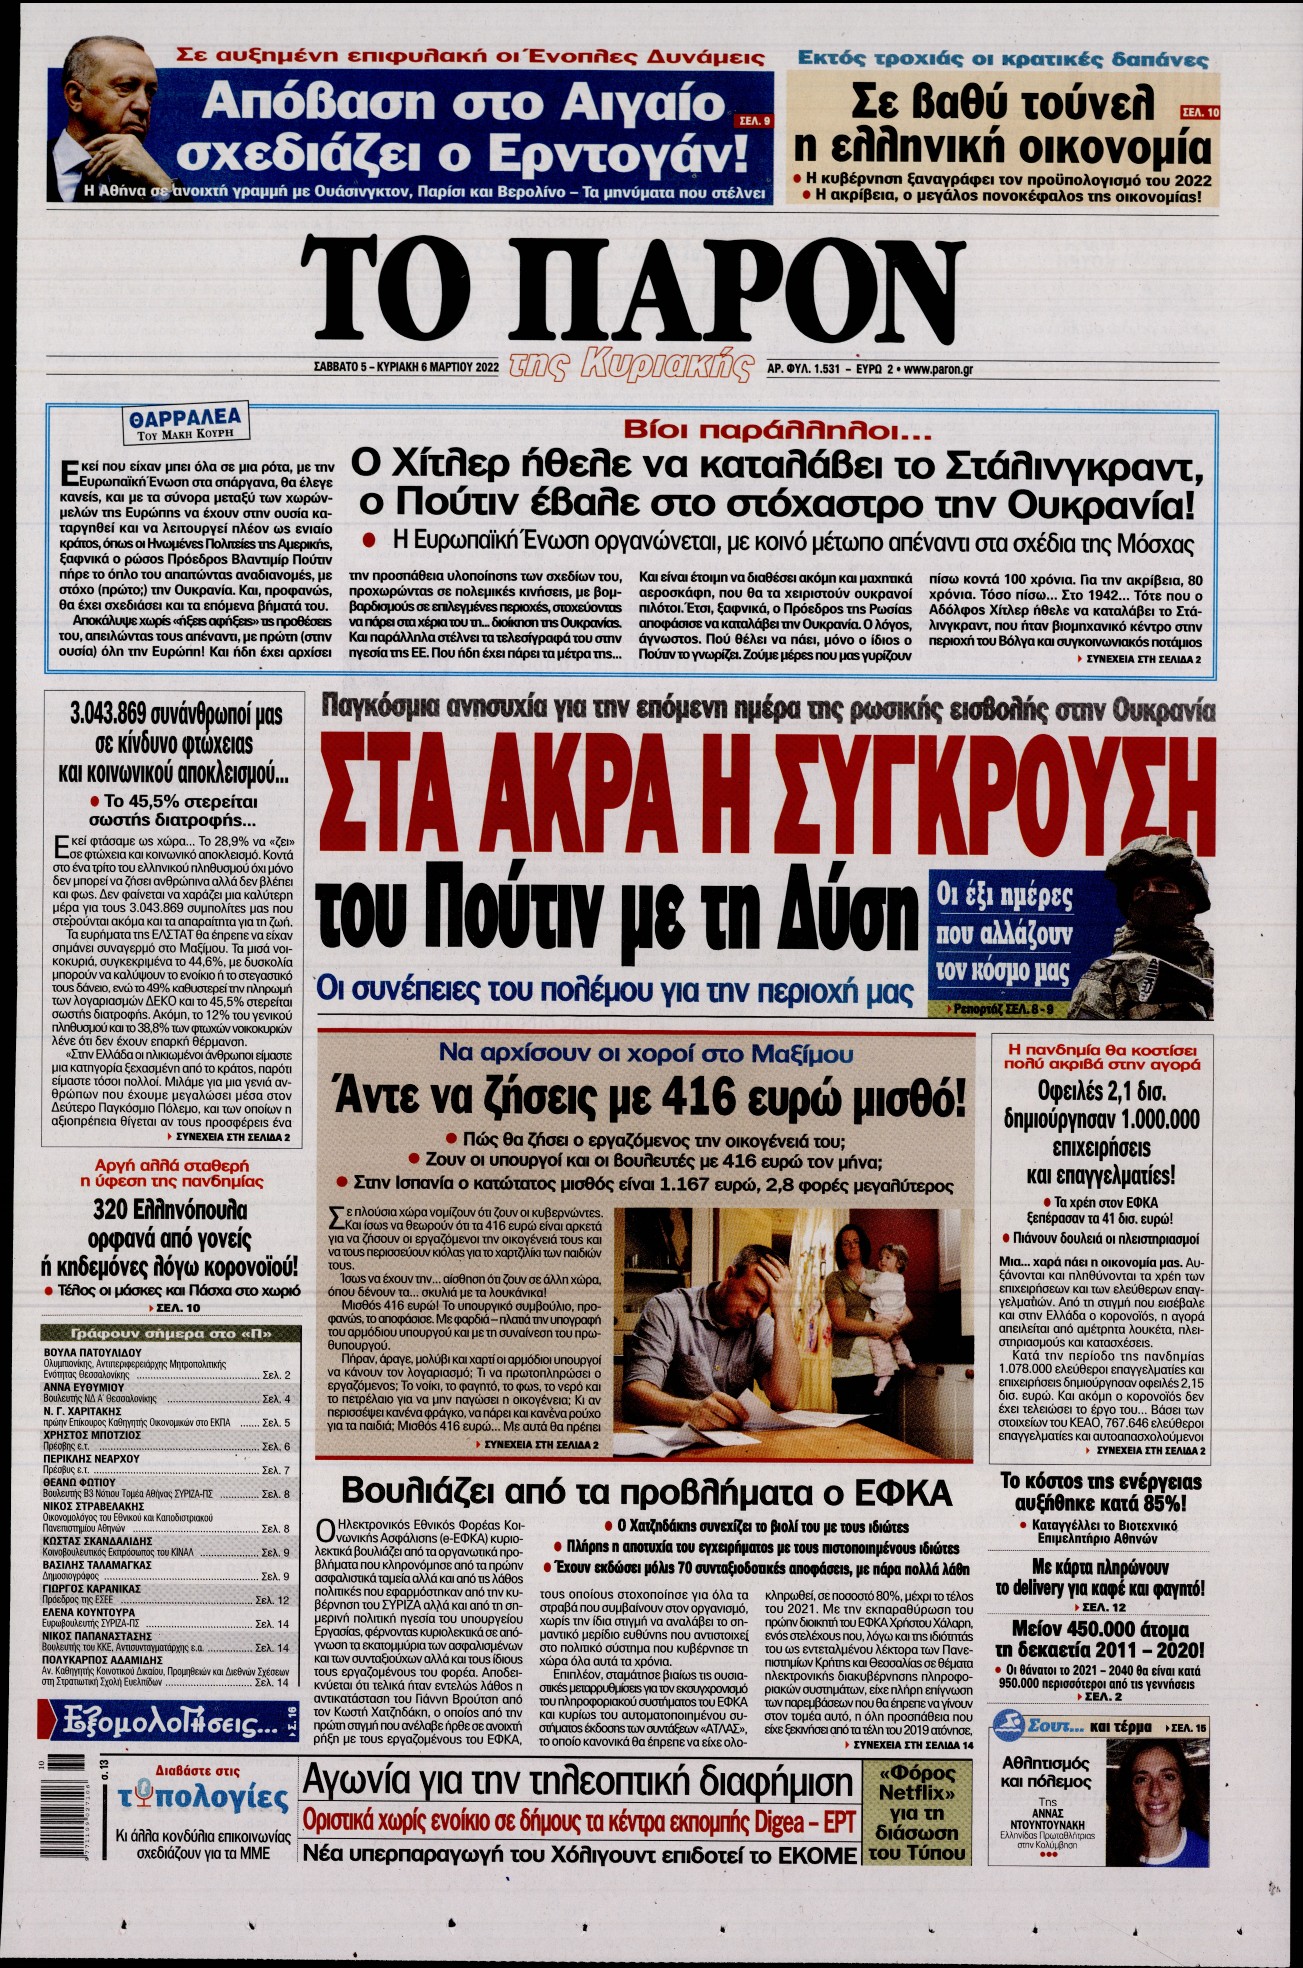 Εξώφυλο εφημερίδας ΤΟ ΠΑΡΟΝ 2022-03-05